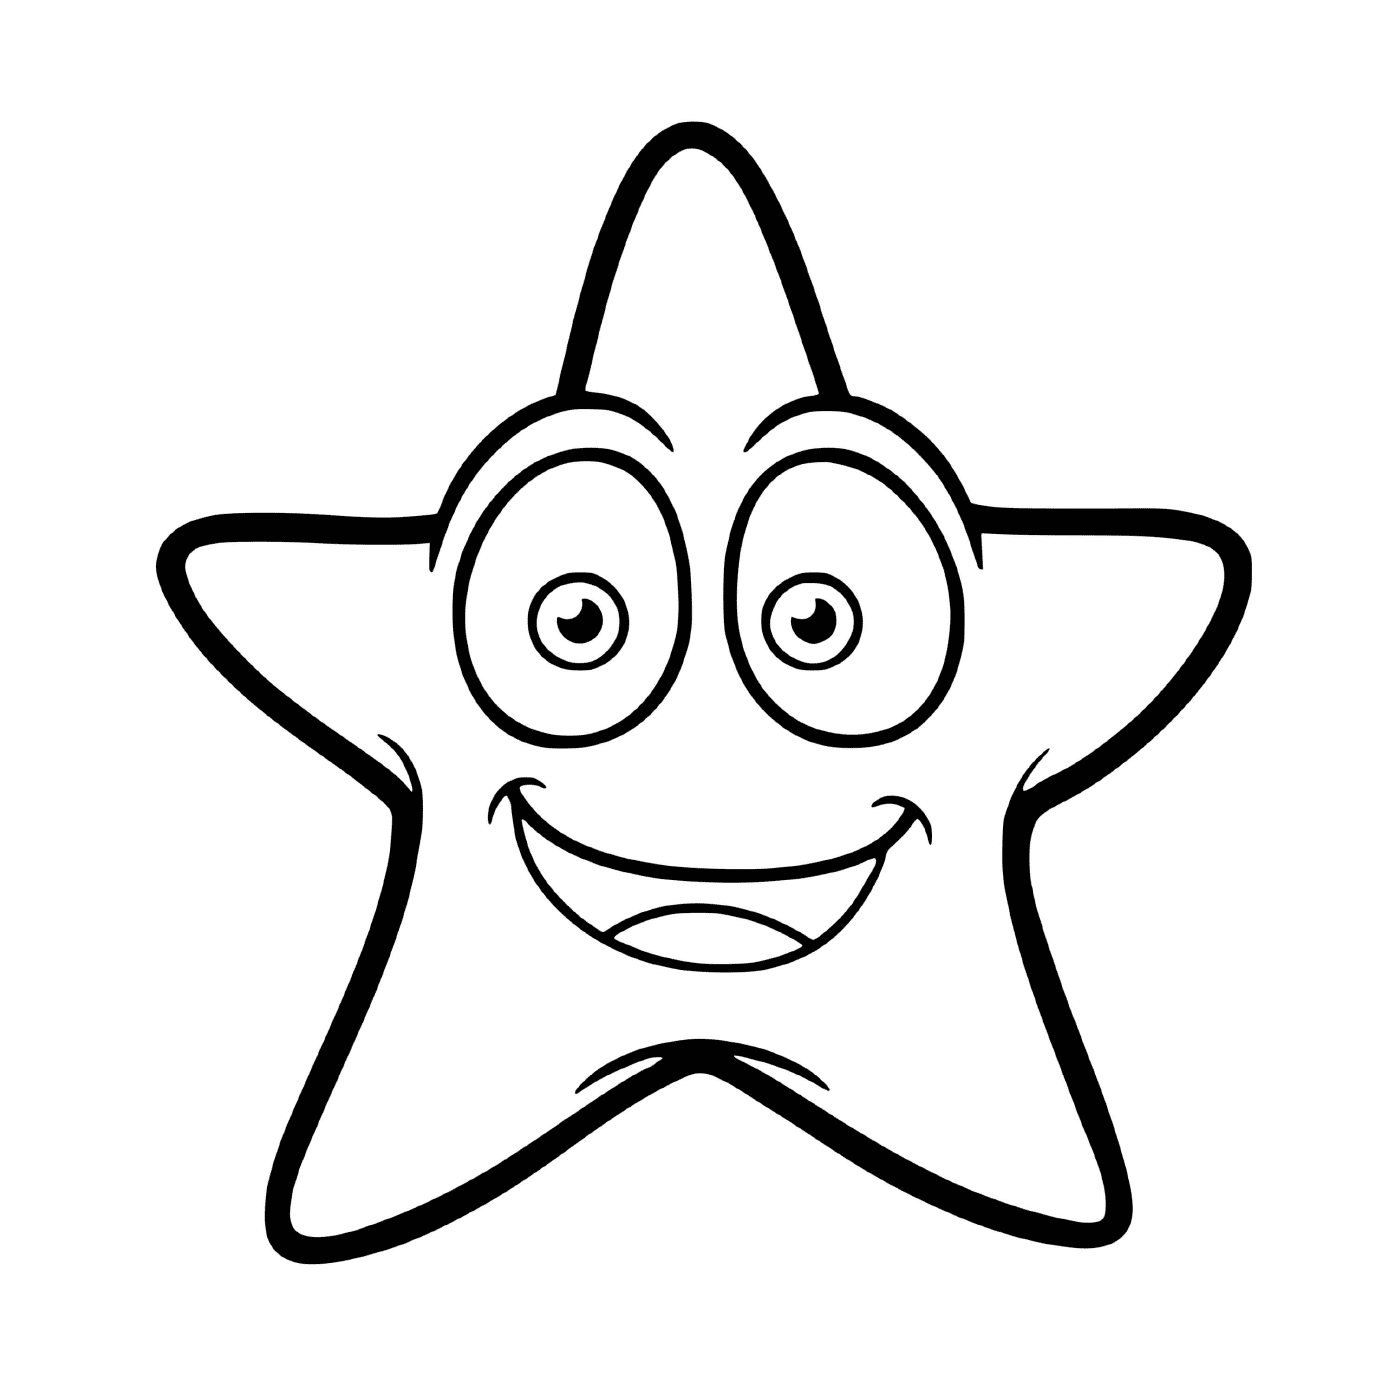  Una stella marina sorridente tra gli animali marini 